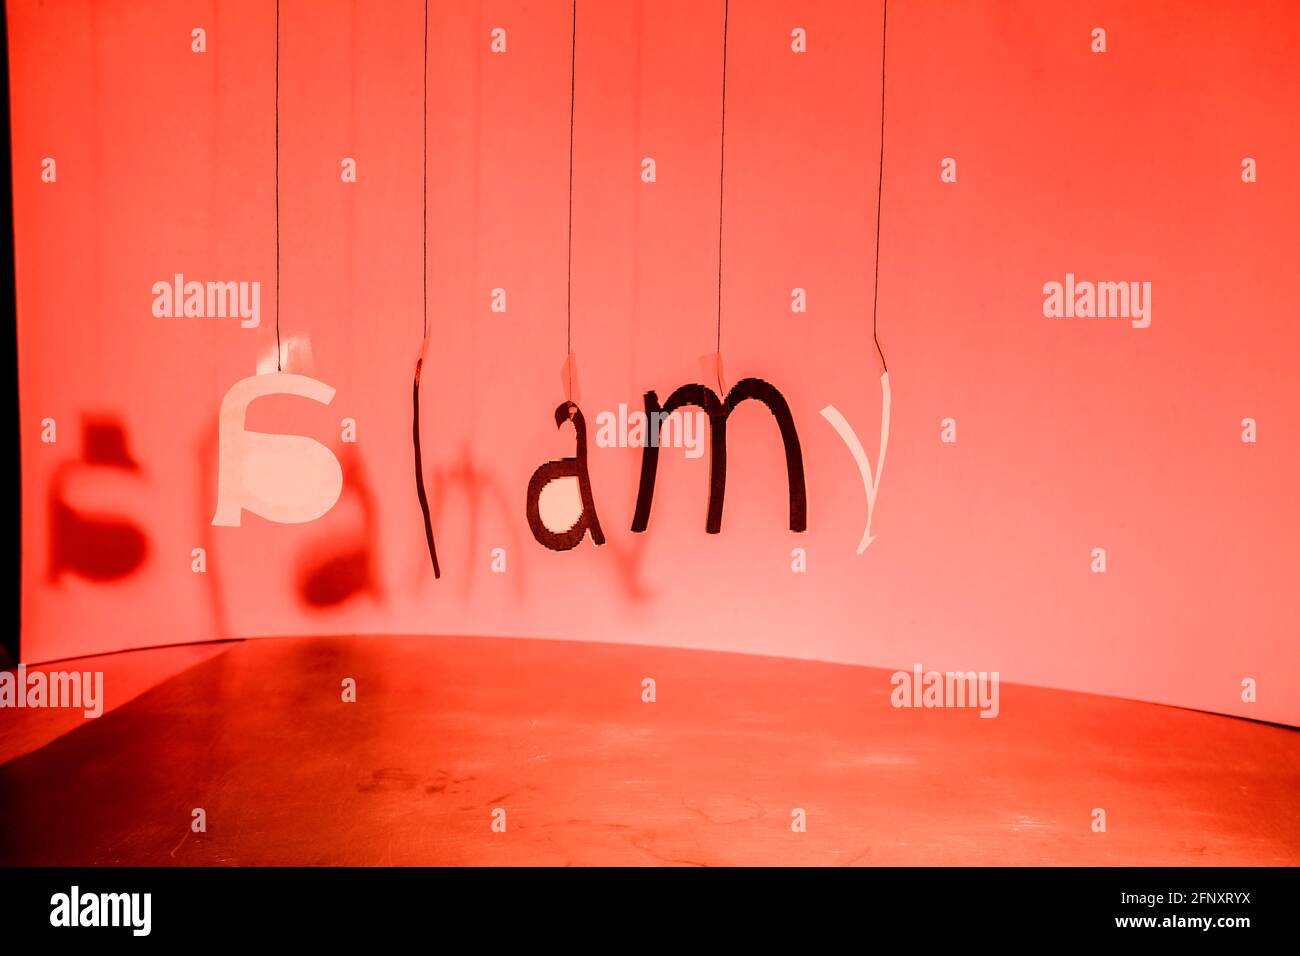 Les lettres accrochées à des fils forment, dans un certain désordre, le logo Alamy. Copier l'espace... Banque D'Images